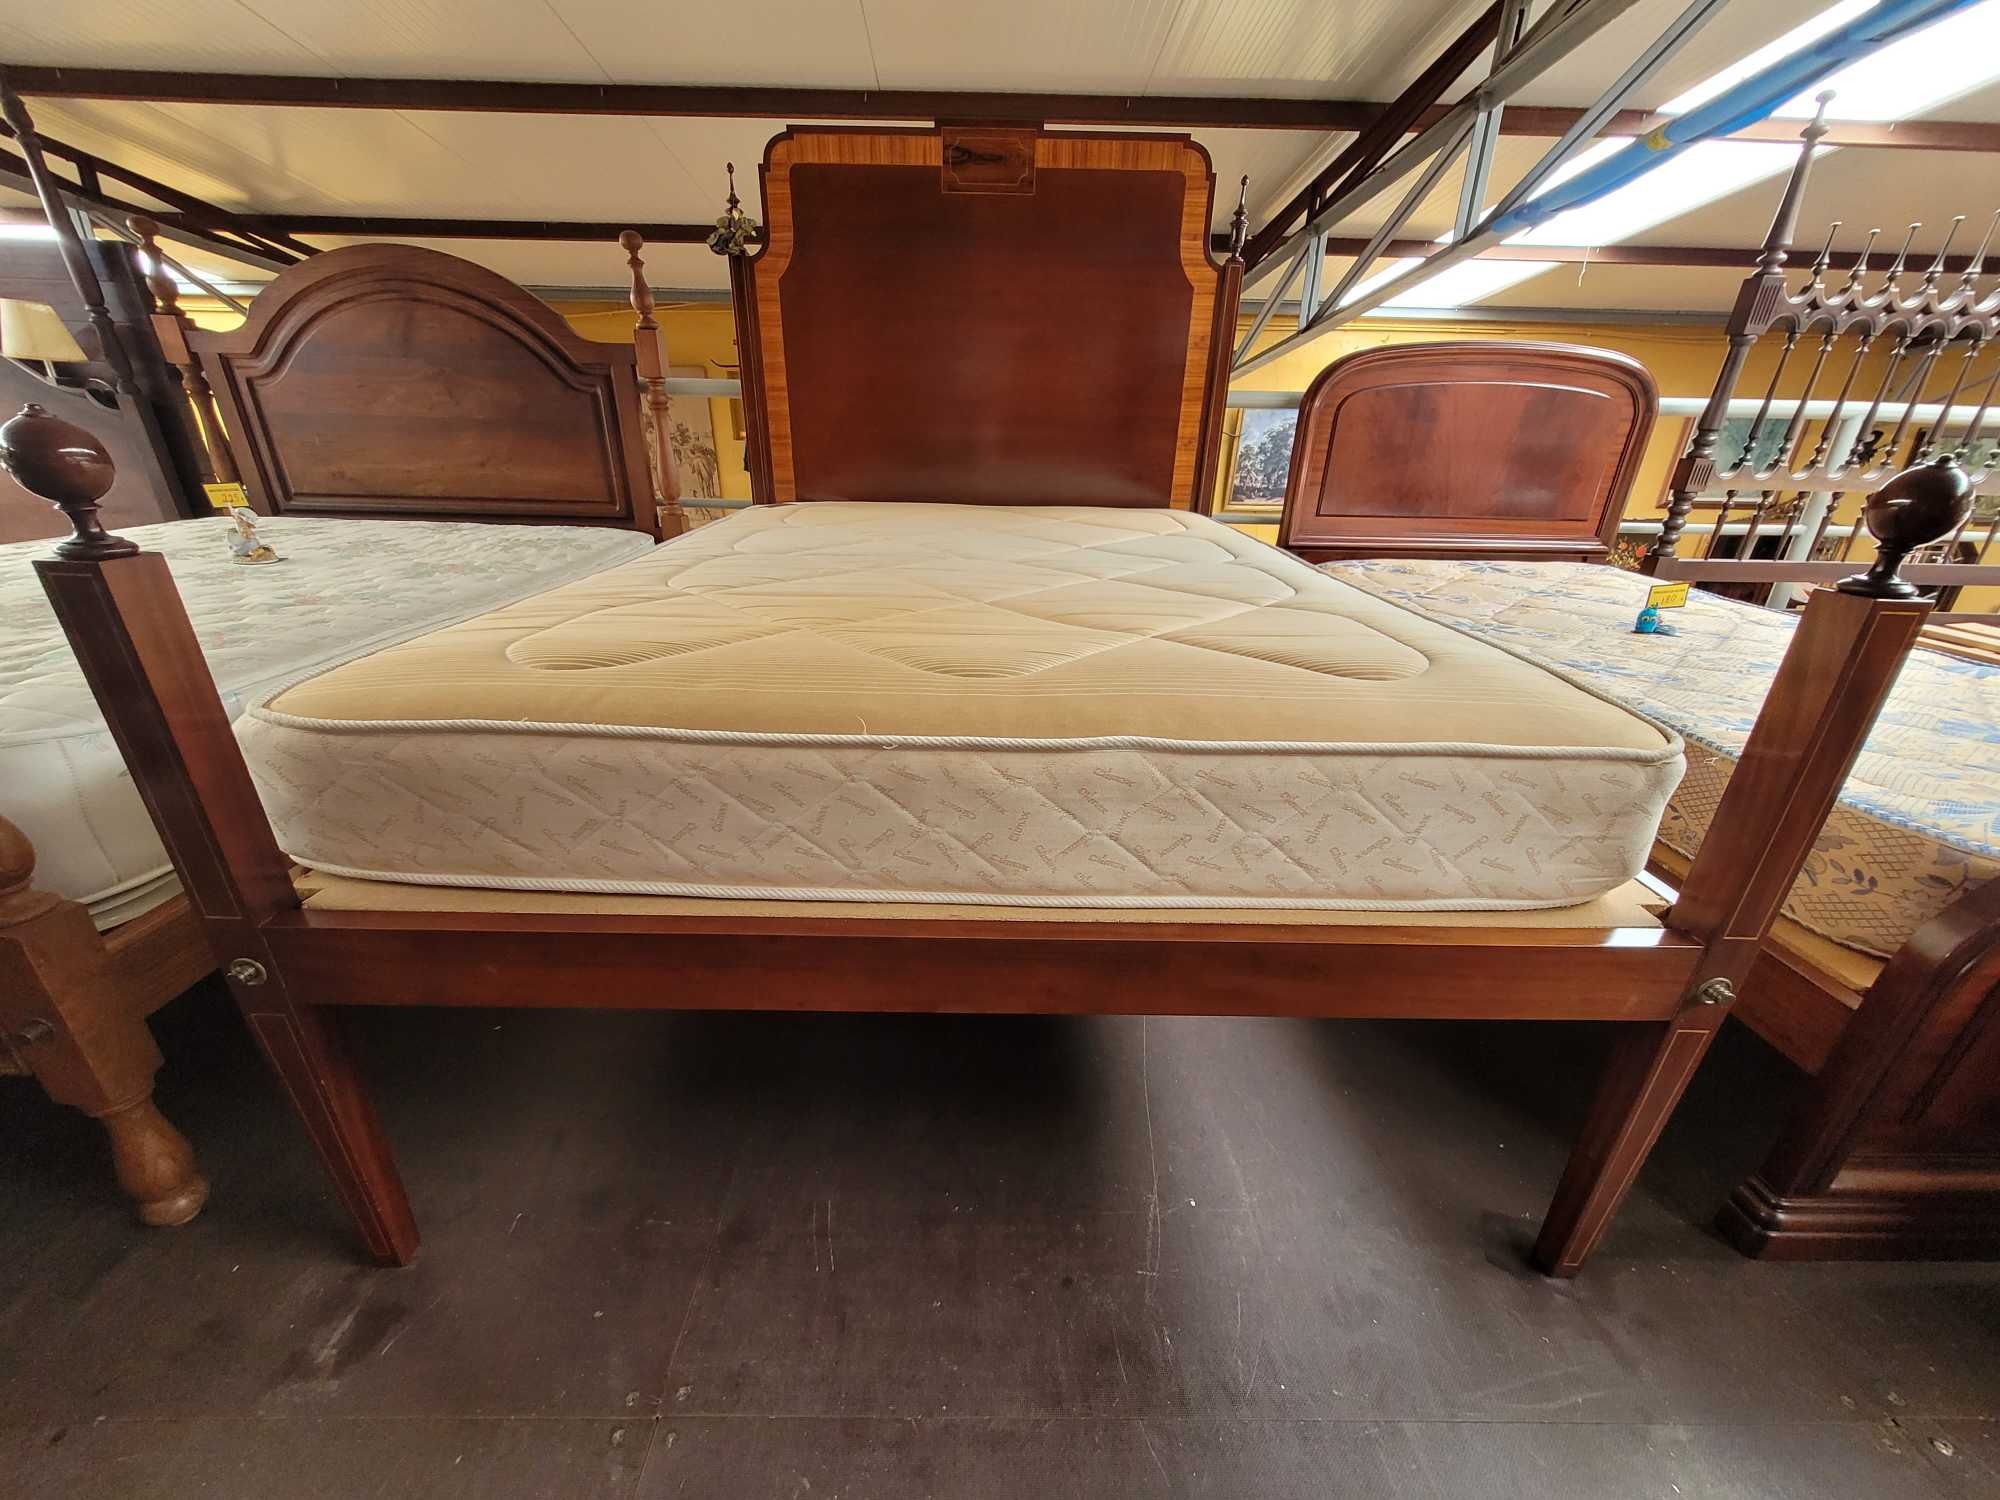 Belíssima cama antiga com estrado e colchão - óptimo estado